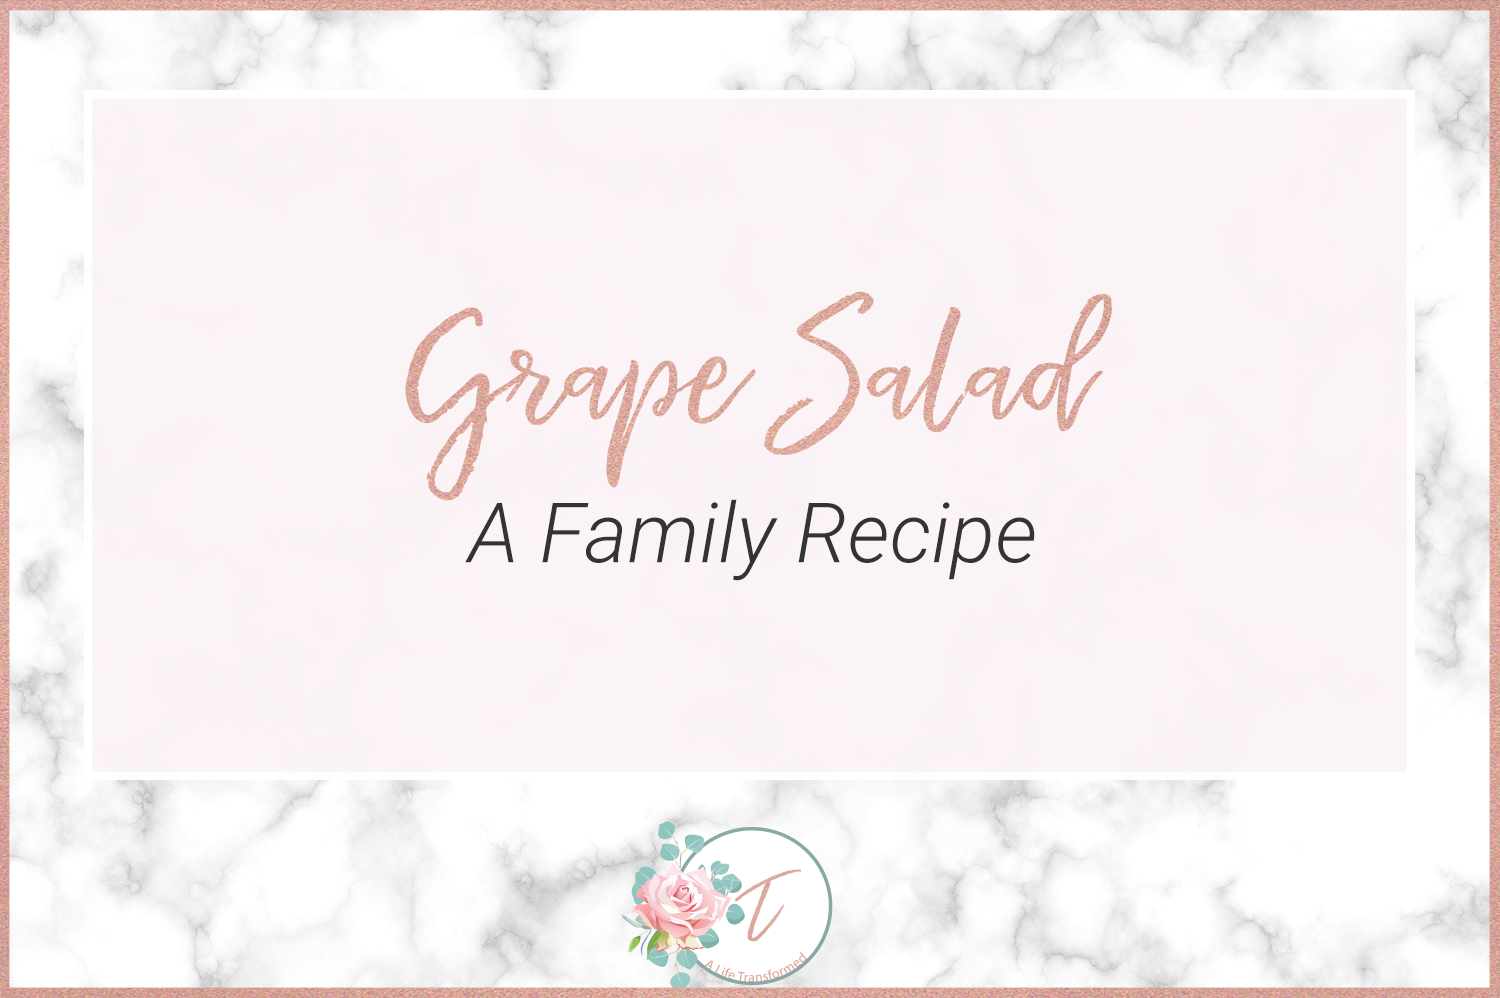 Grape-Salad-Image